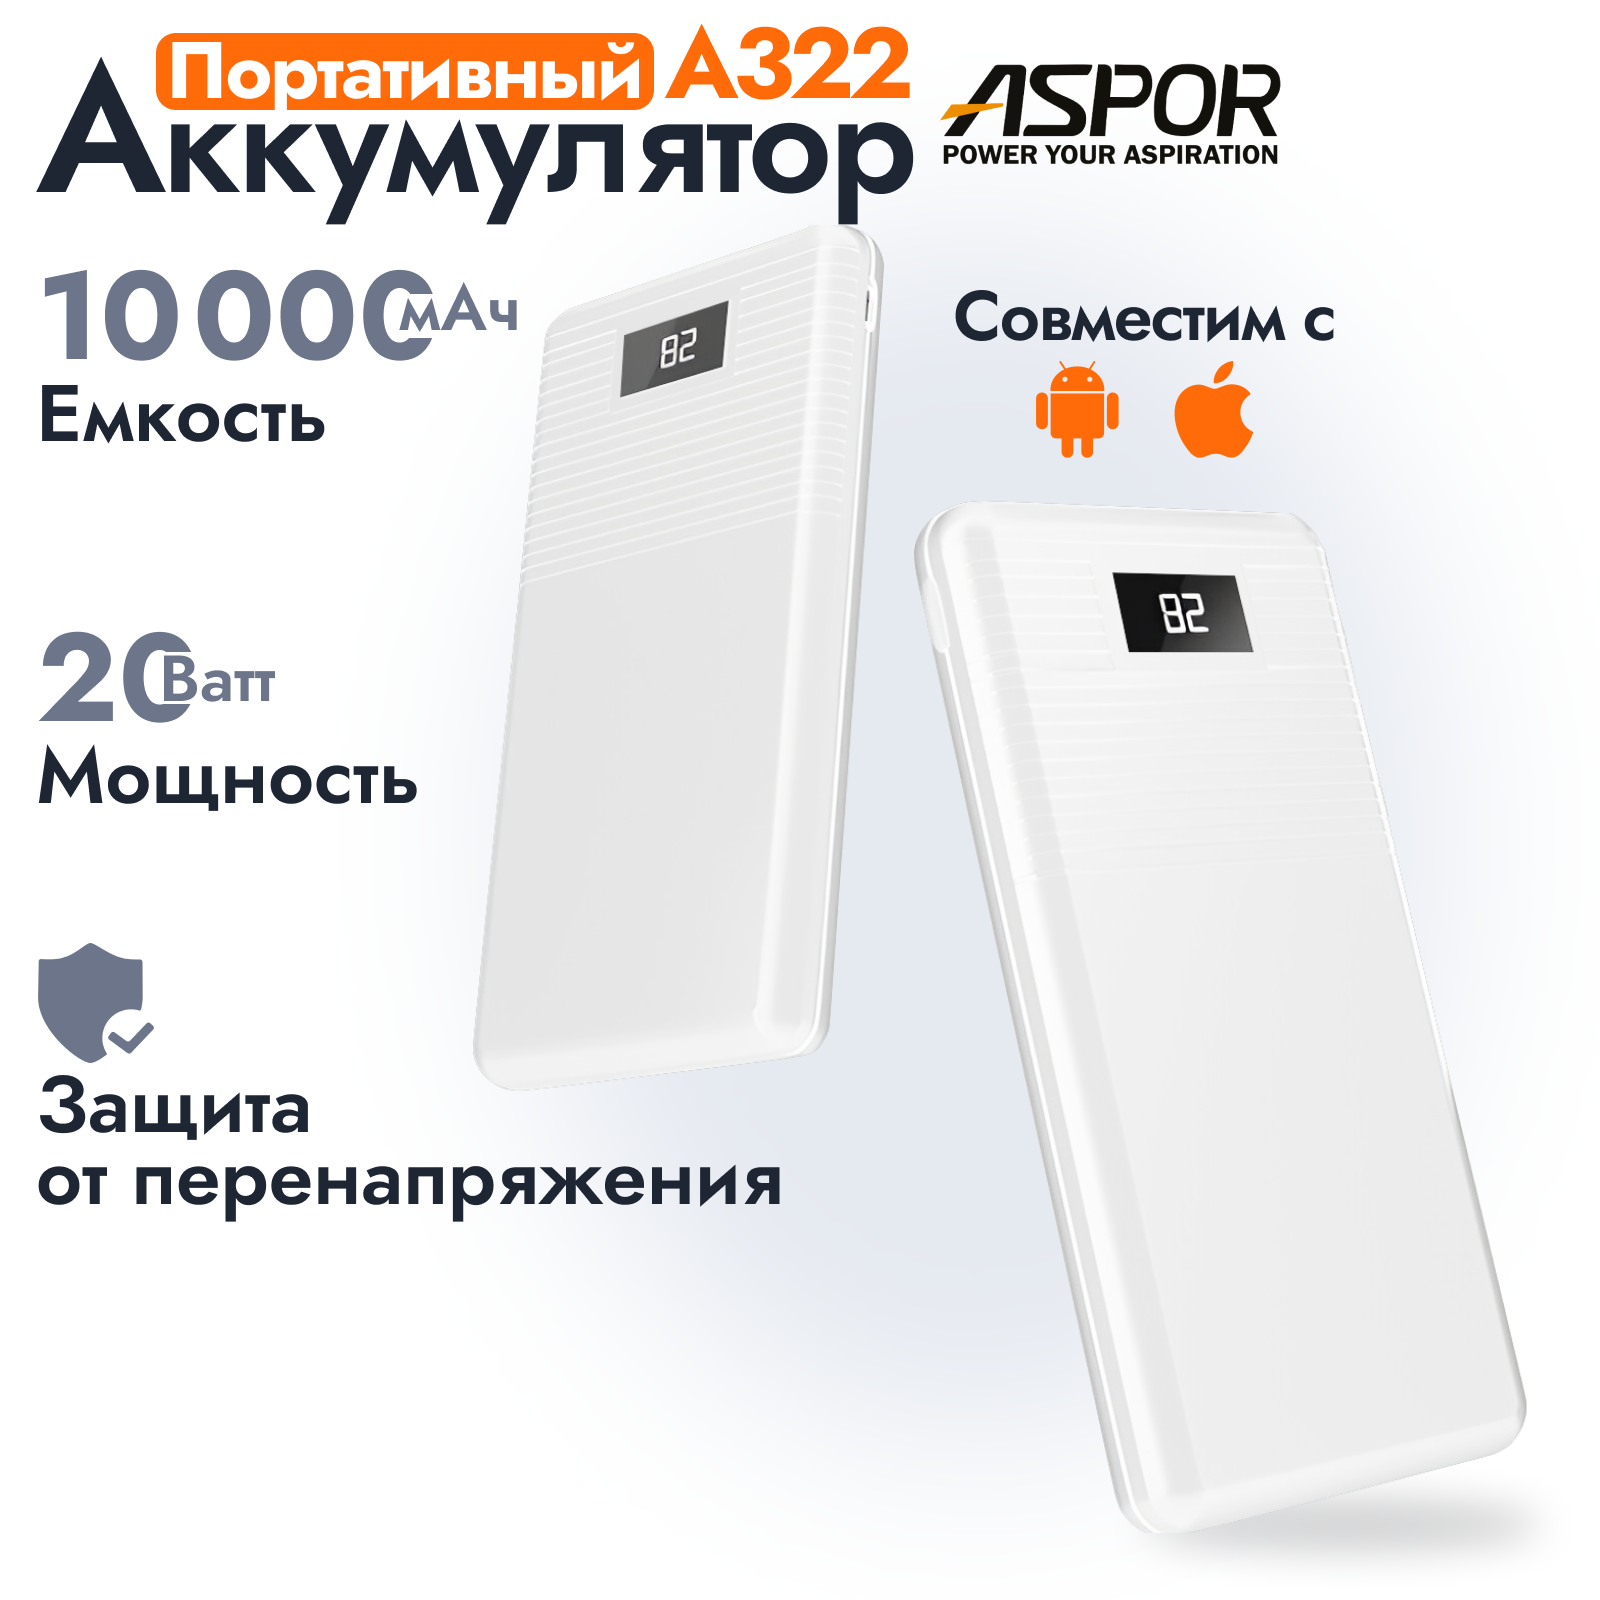 Портативный аккумулятор Aspor A322 10000 мАч / Power bank для IOS, Android белый